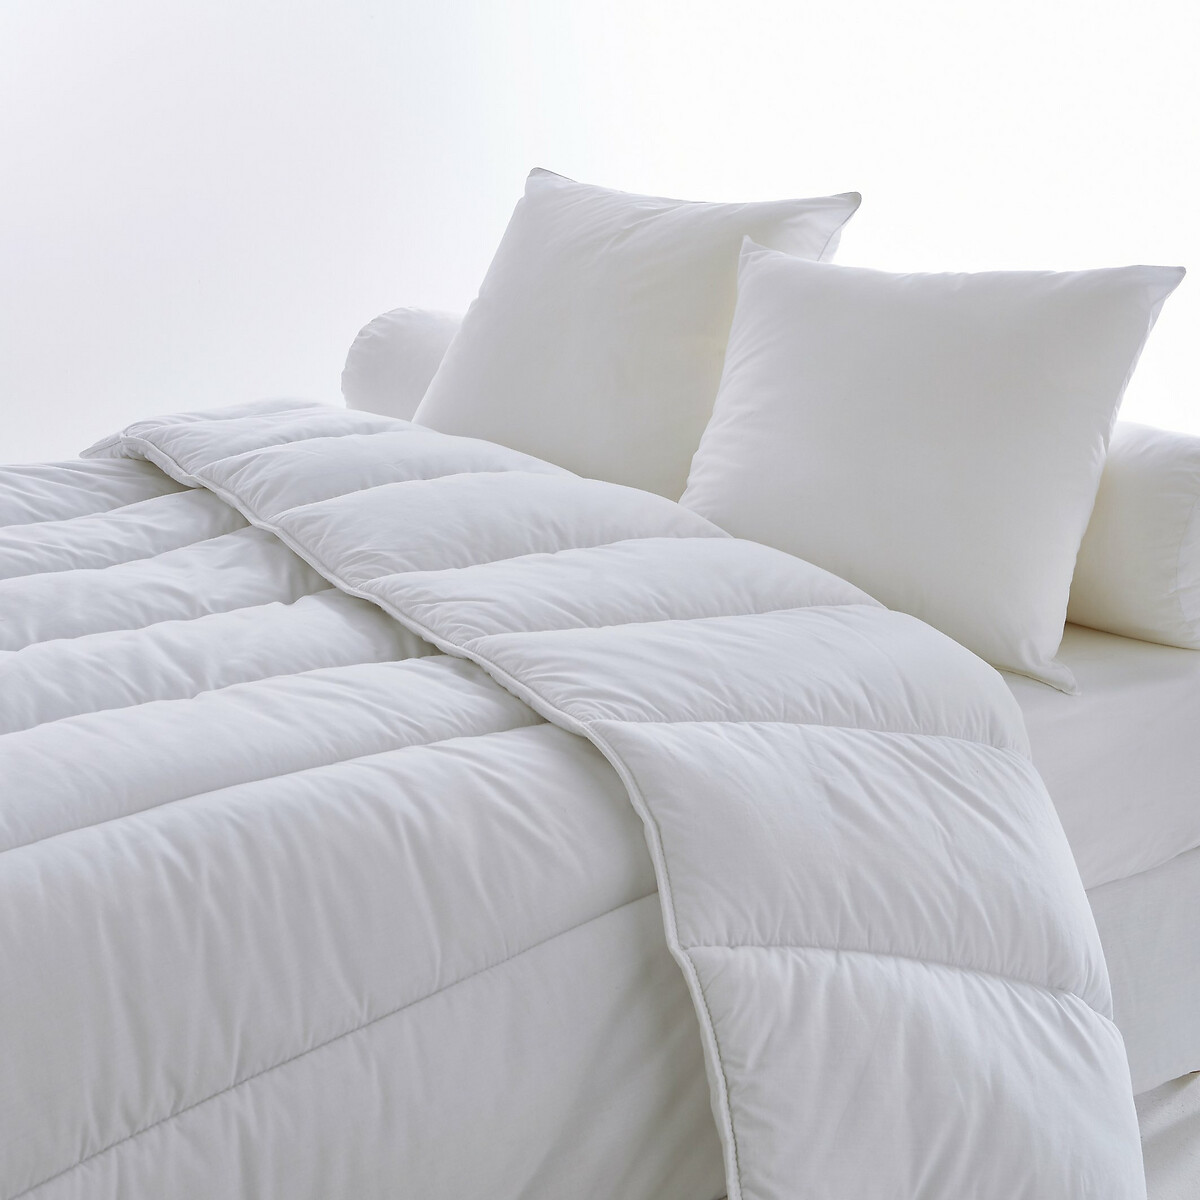 Одеяло La Redoute гм -сп   подушки 260 x 240 см белый, размер 260 x 240 см - фото 1